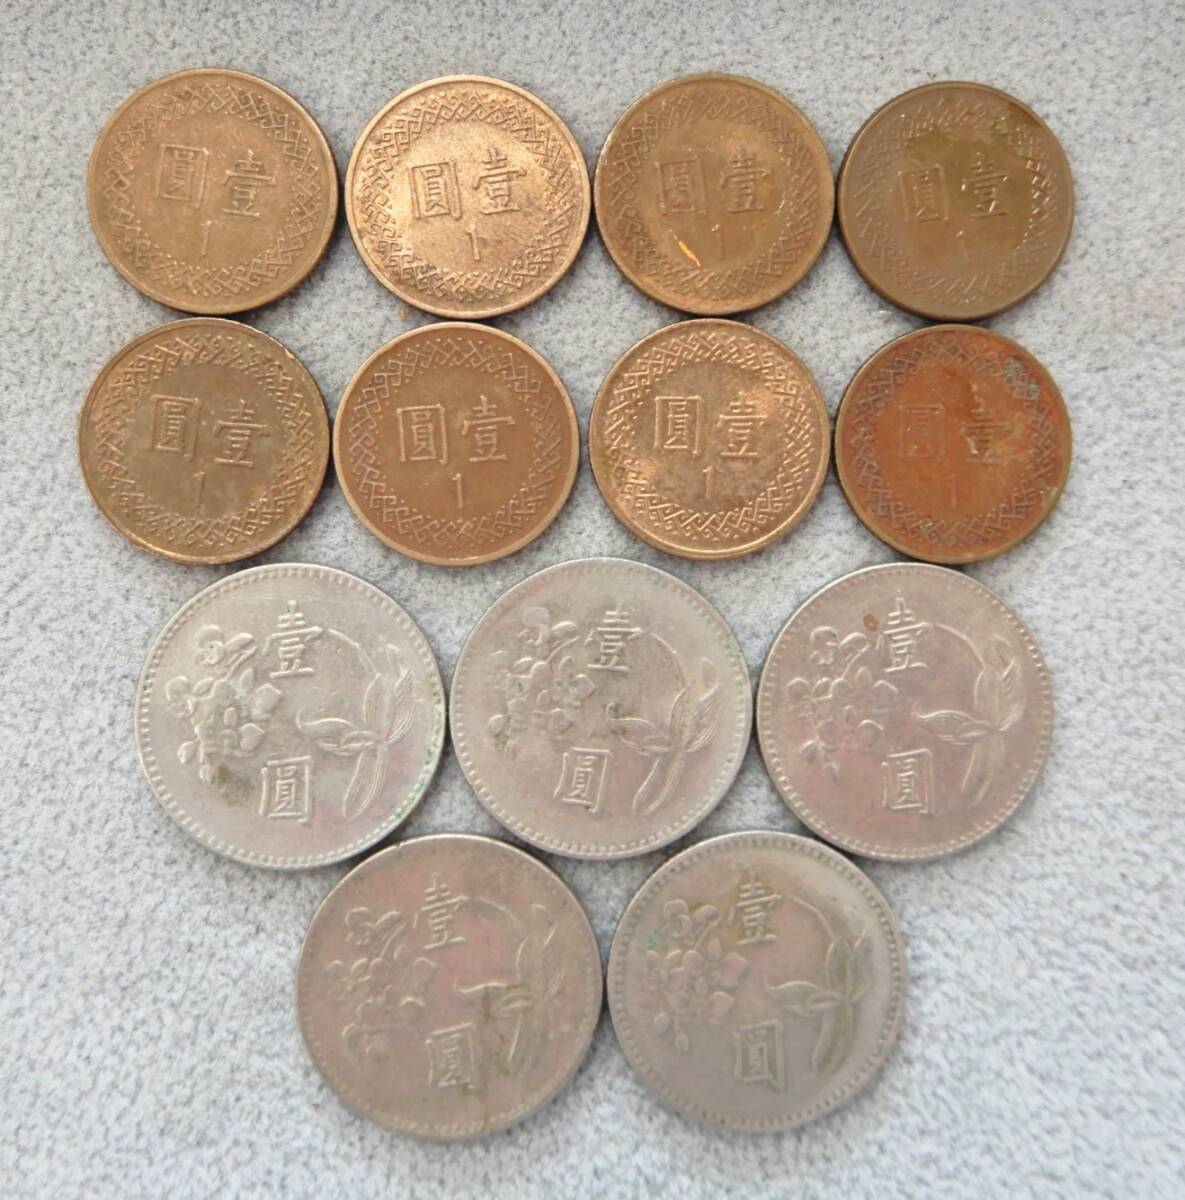 [USED товар ] Taiwan доллар старый банкноты + монета итого 5,163.